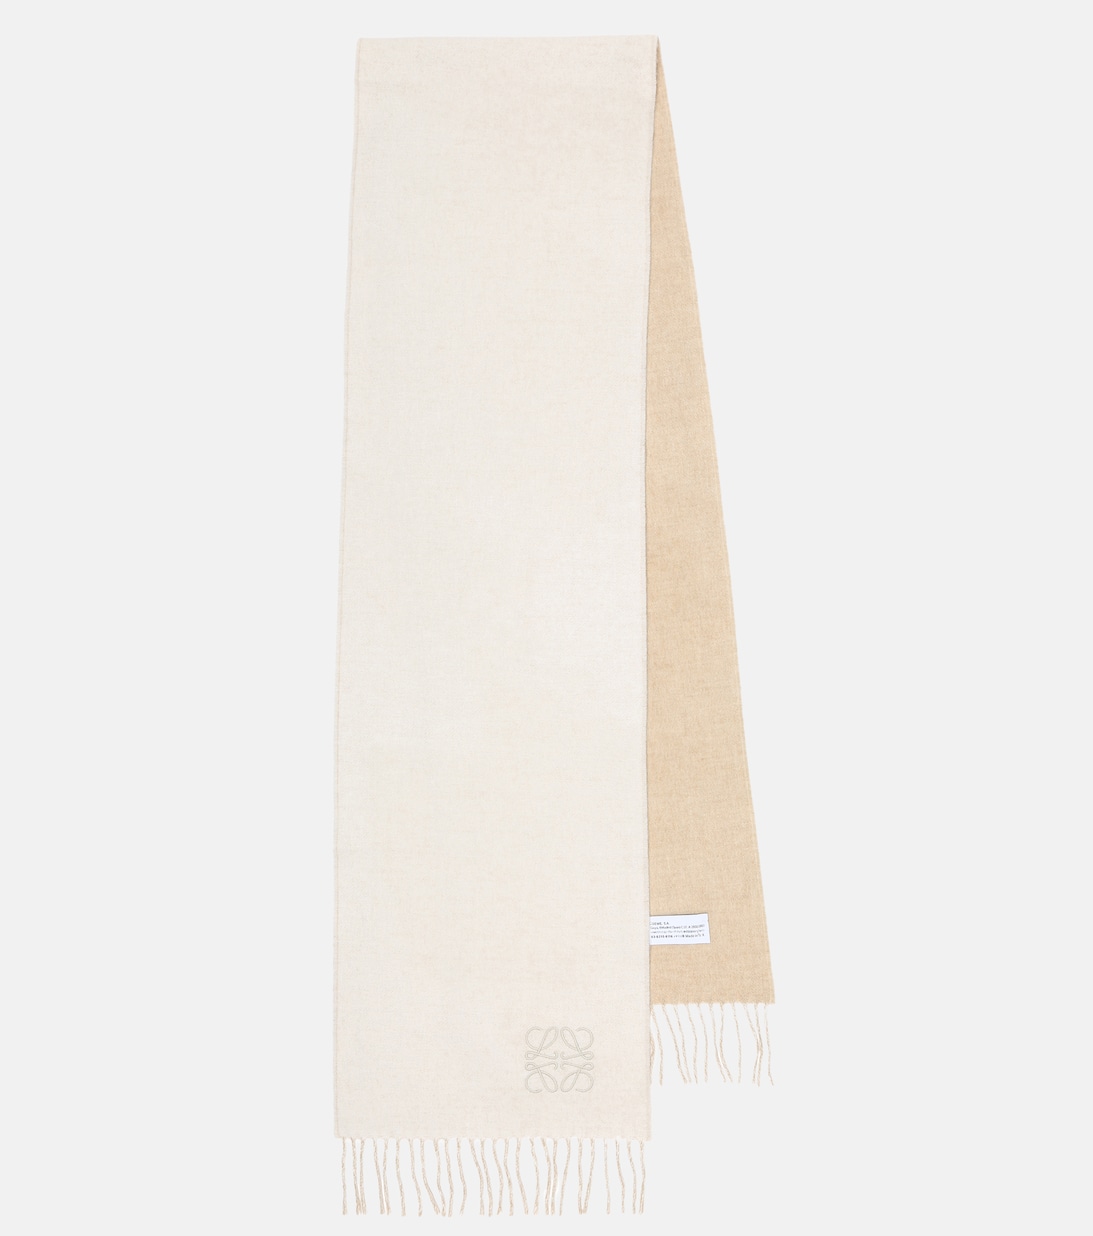 Шарф из шерсти и кашемира Loewe, белый шарф из кашемира и шерсти гладкой вязки цвет – белый